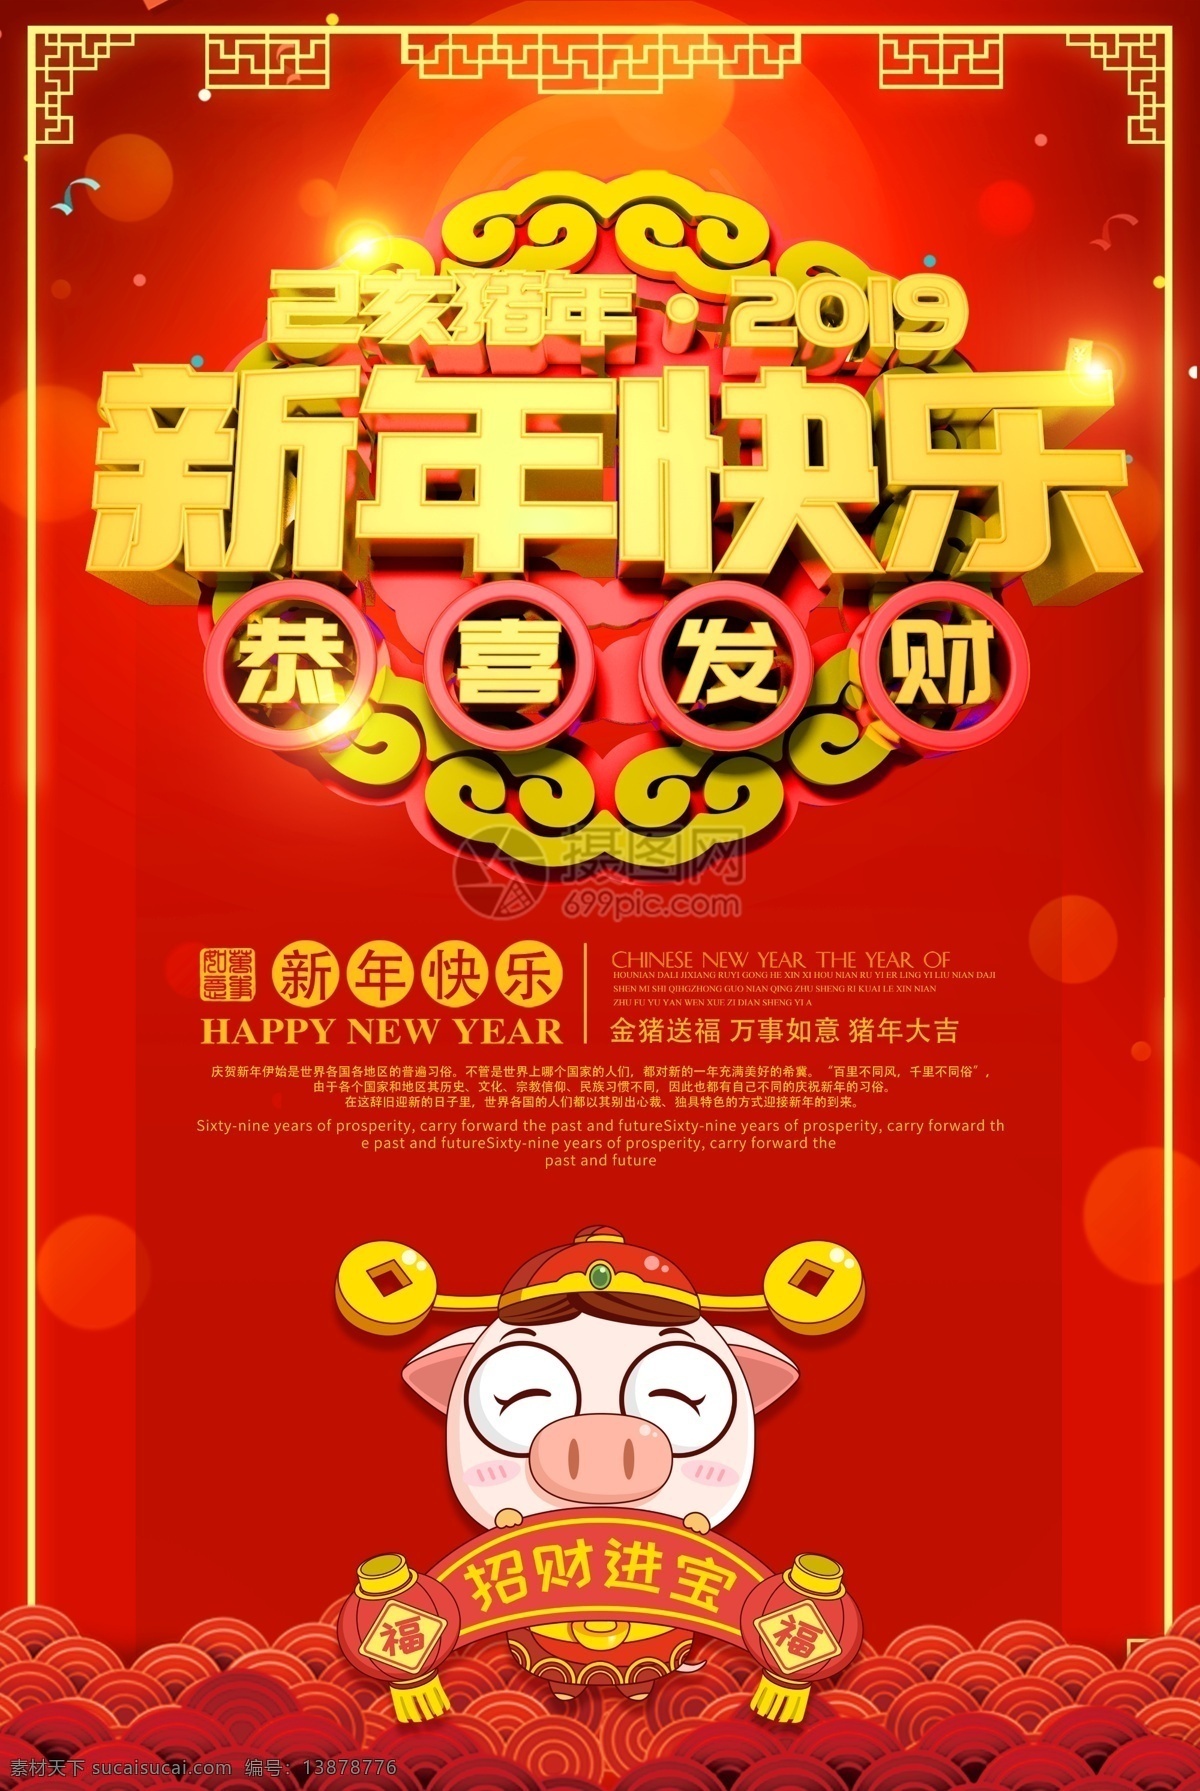 红色 新年 快乐 恭喜发财 节日 海报 新年快乐 节日海报 中国红 新年海报 猪年 2019 福猪 己亥猪年